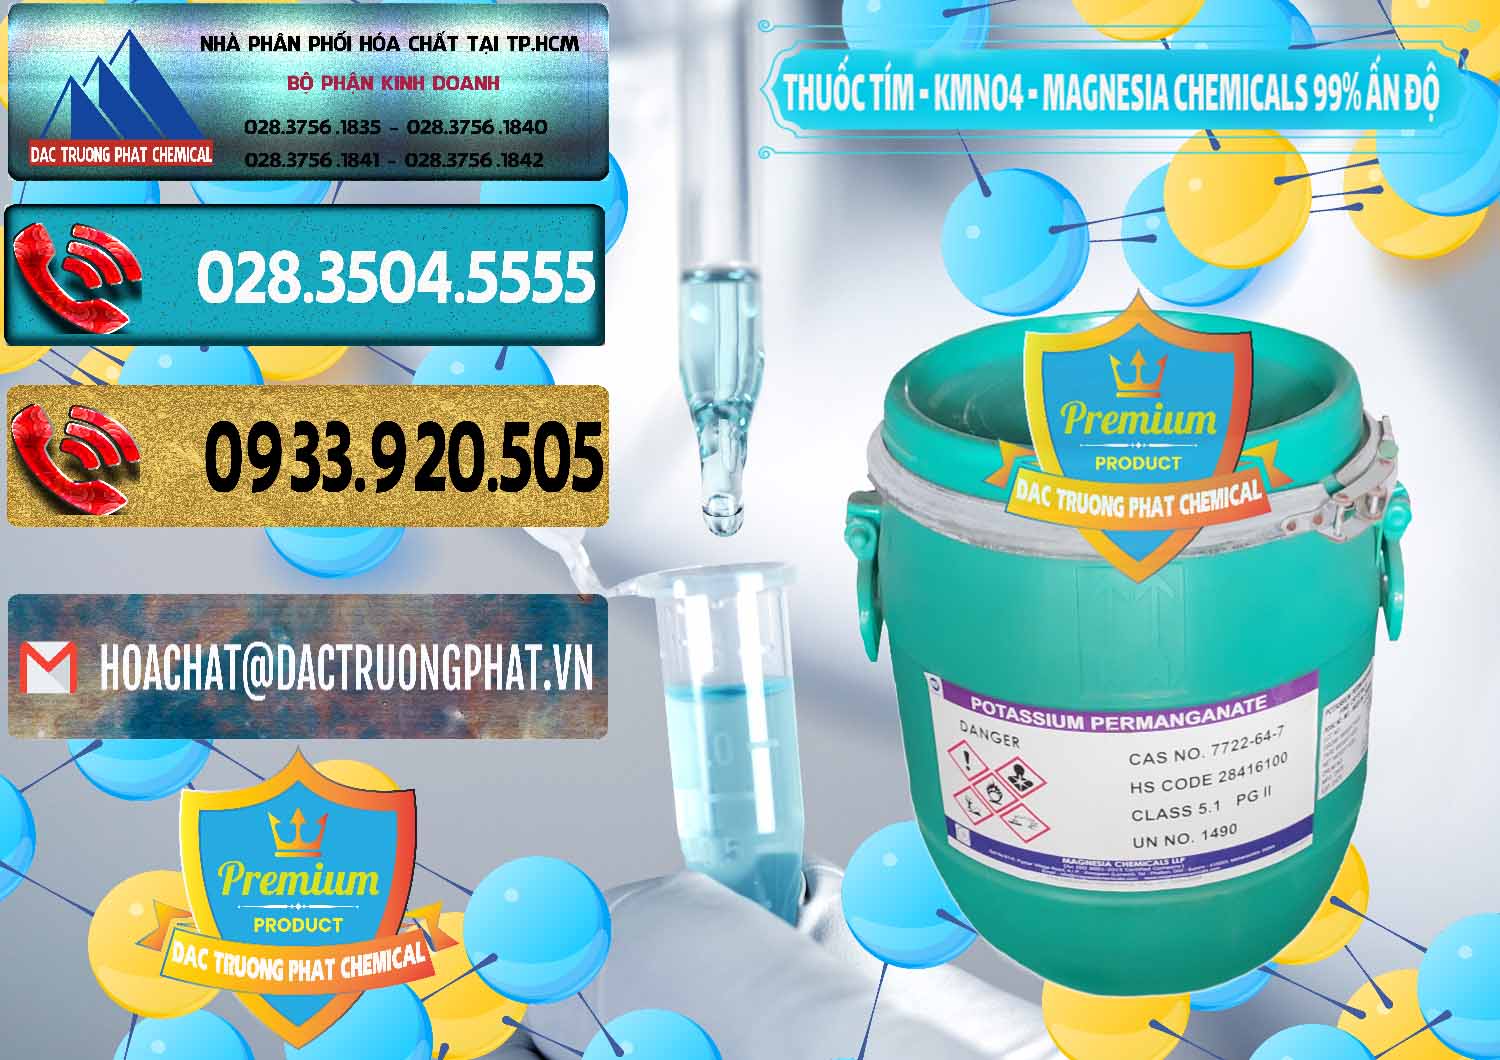 Cty cung cấp & bán Thuốc Tím - KMNO4 Magnesia Chemicals 99% Ấn Độ India - 0251 - Nơi chuyên nhập khẩu - phân phối hóa chất tại TP.HCM - hoachatdetnhuom.com